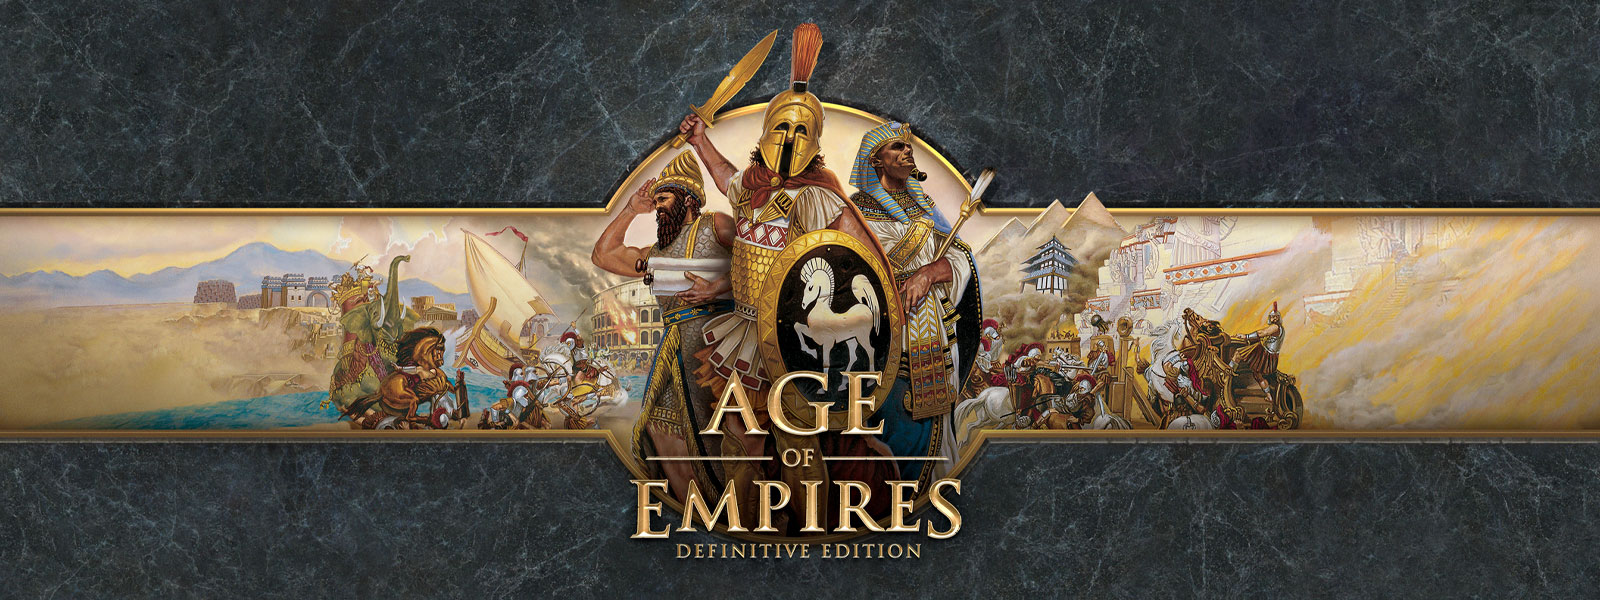 Логотип Age of Empires: Definitive Edition на темно-сером фоне с изображением полководцев и их армий